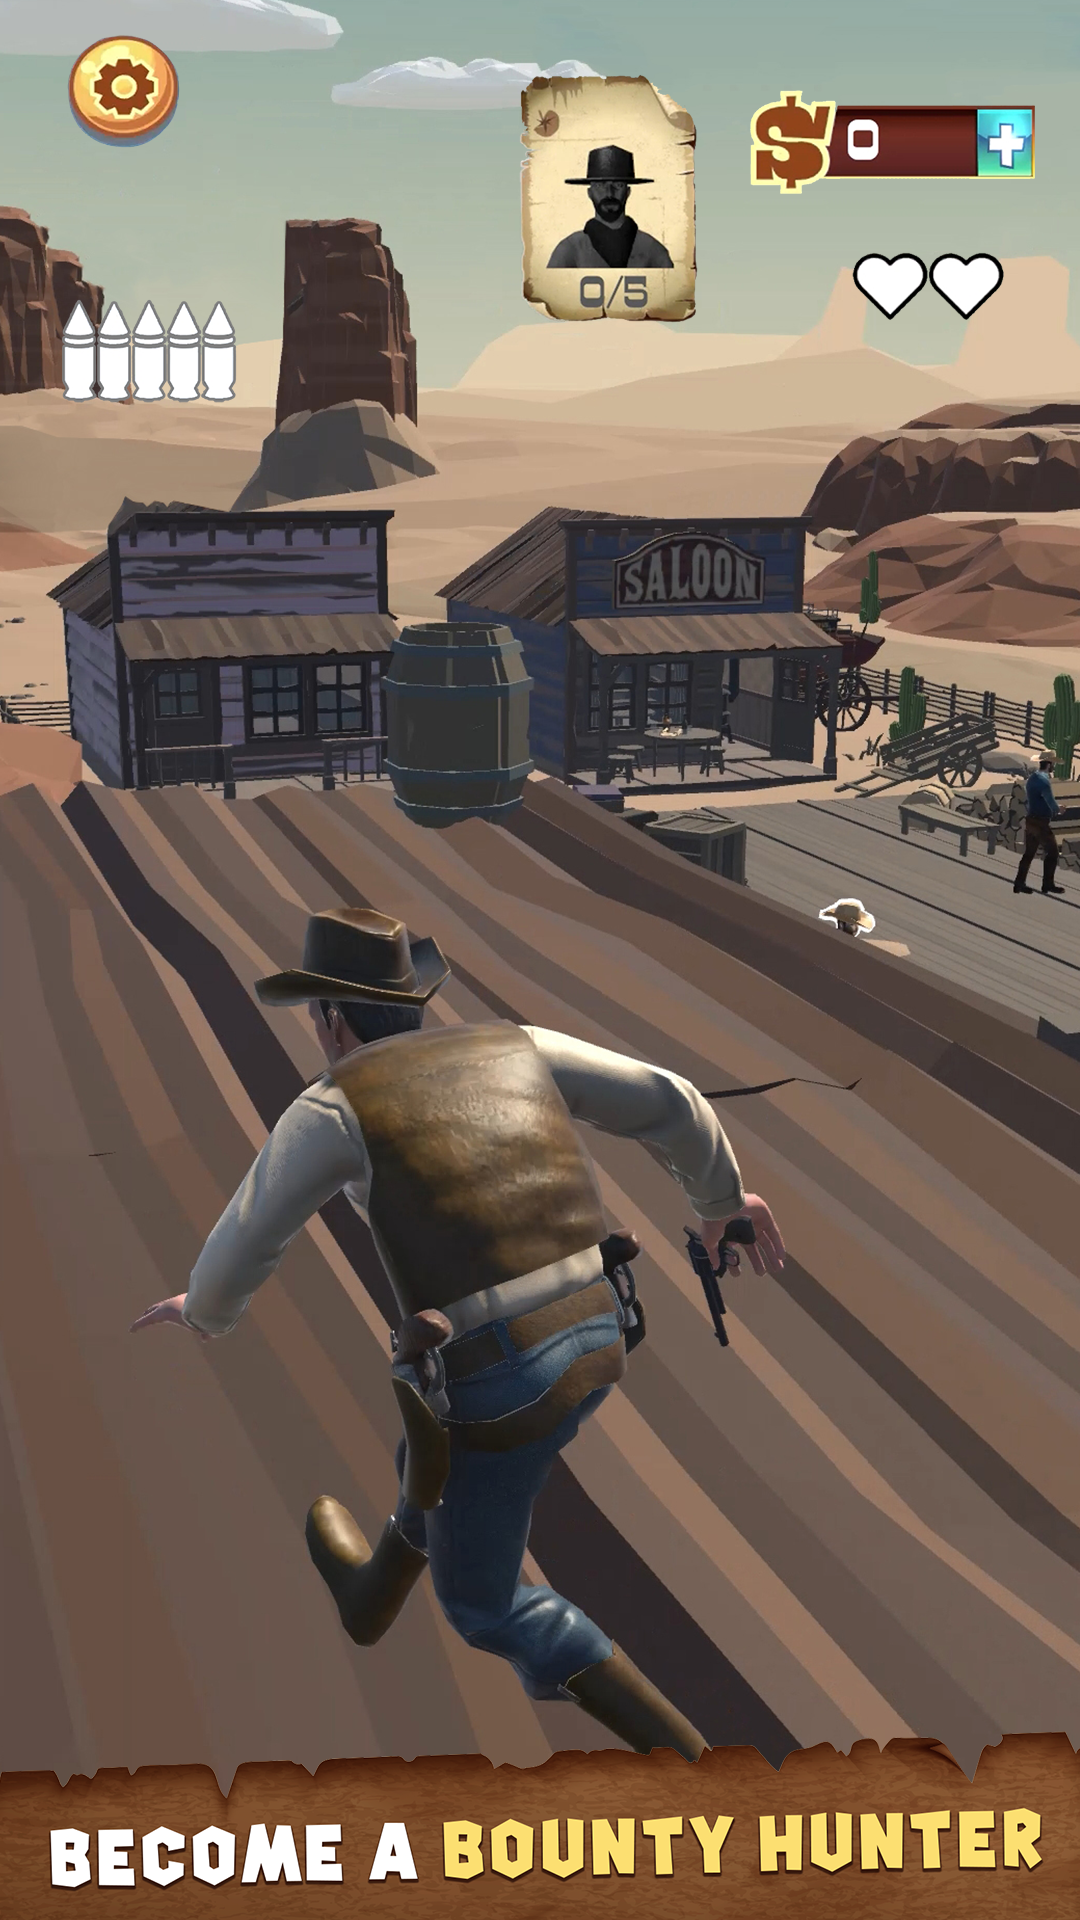 Wild West Cowboy Redemption screenshot game